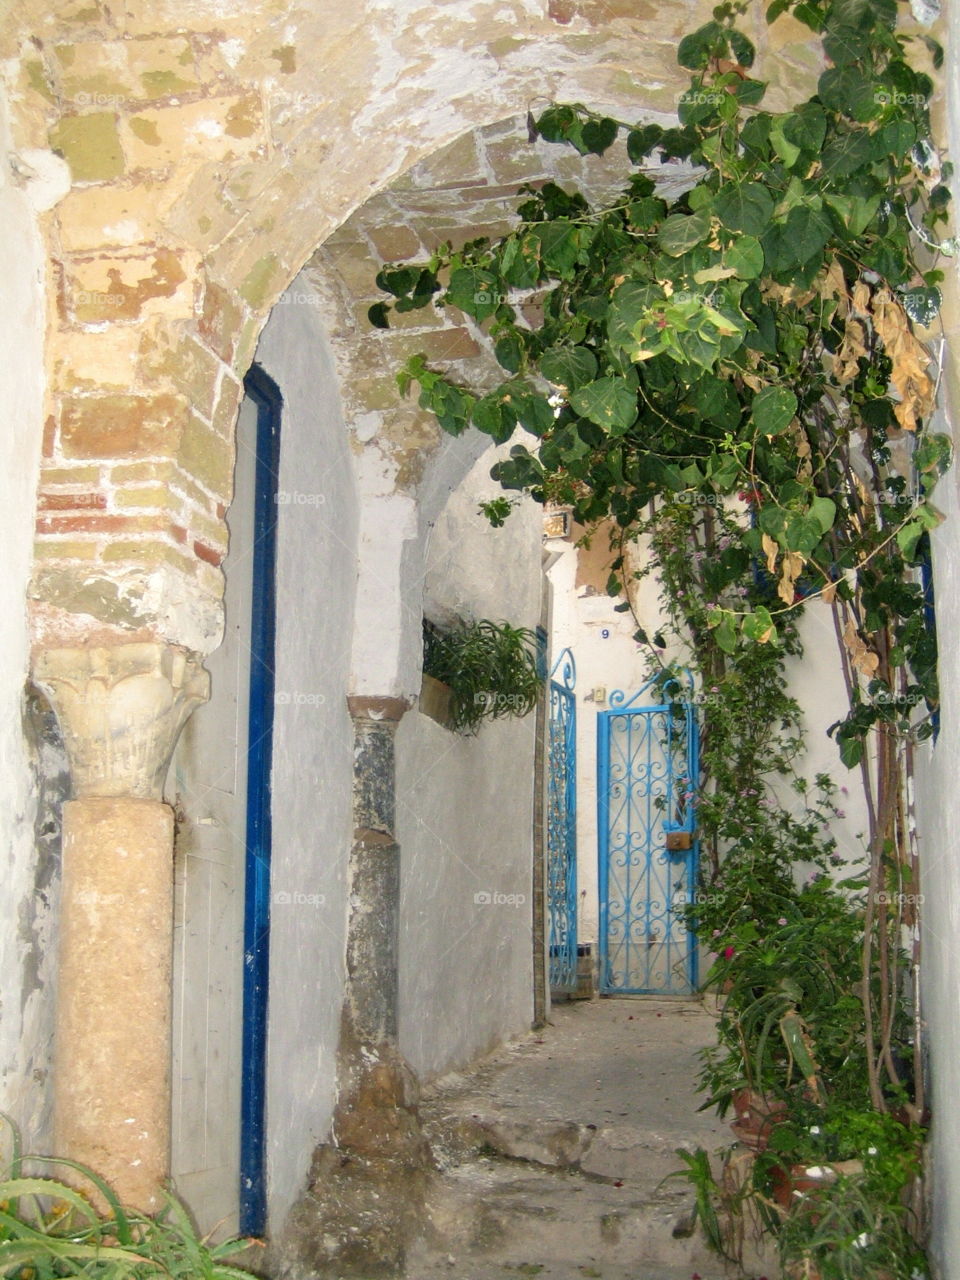 Narrow street in Tunisia with beautiful doors